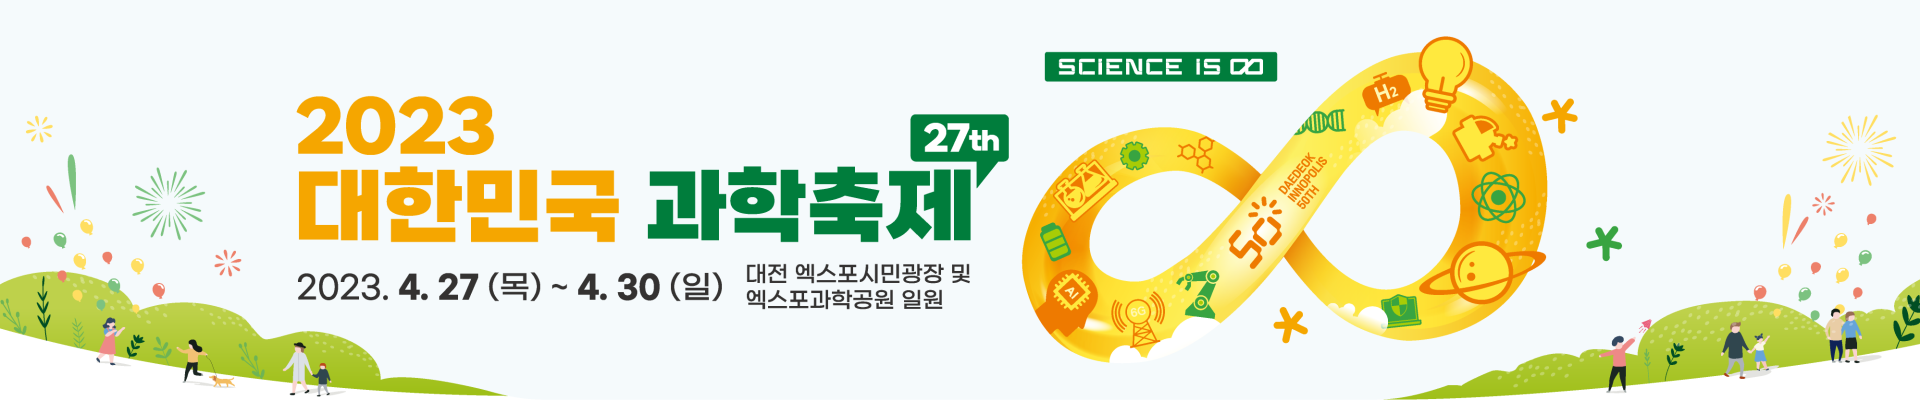 2023 대한민국 과학축제 사전등록